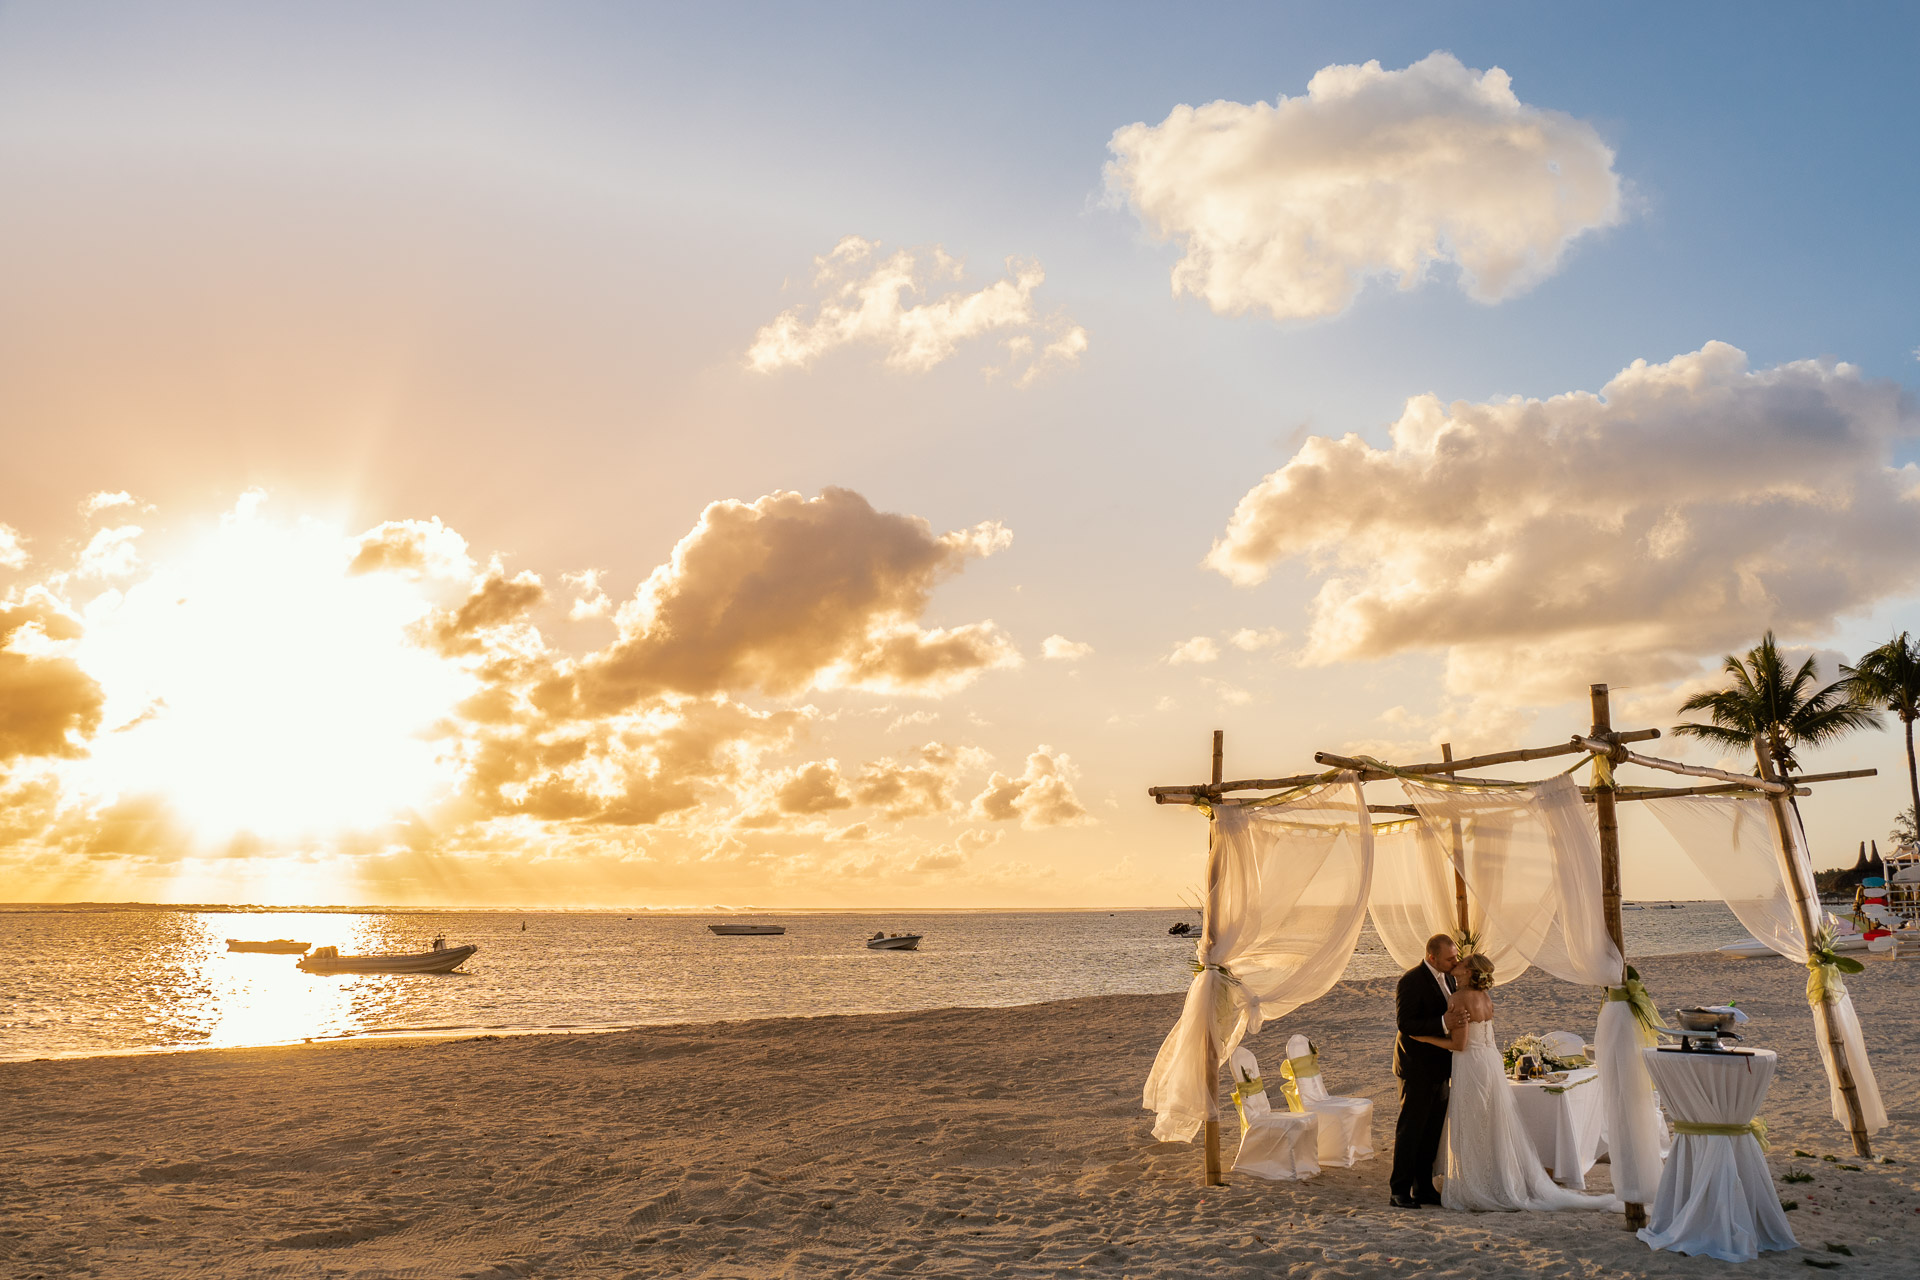 Mauritius Events, Eva Beumers, Monika Beumers, Heiraten auf Mauritius, Weddingplanner, Hochzeit am Strand, Strandhochzeit, Heiraten im Hotel, Hochzeit im Hotel